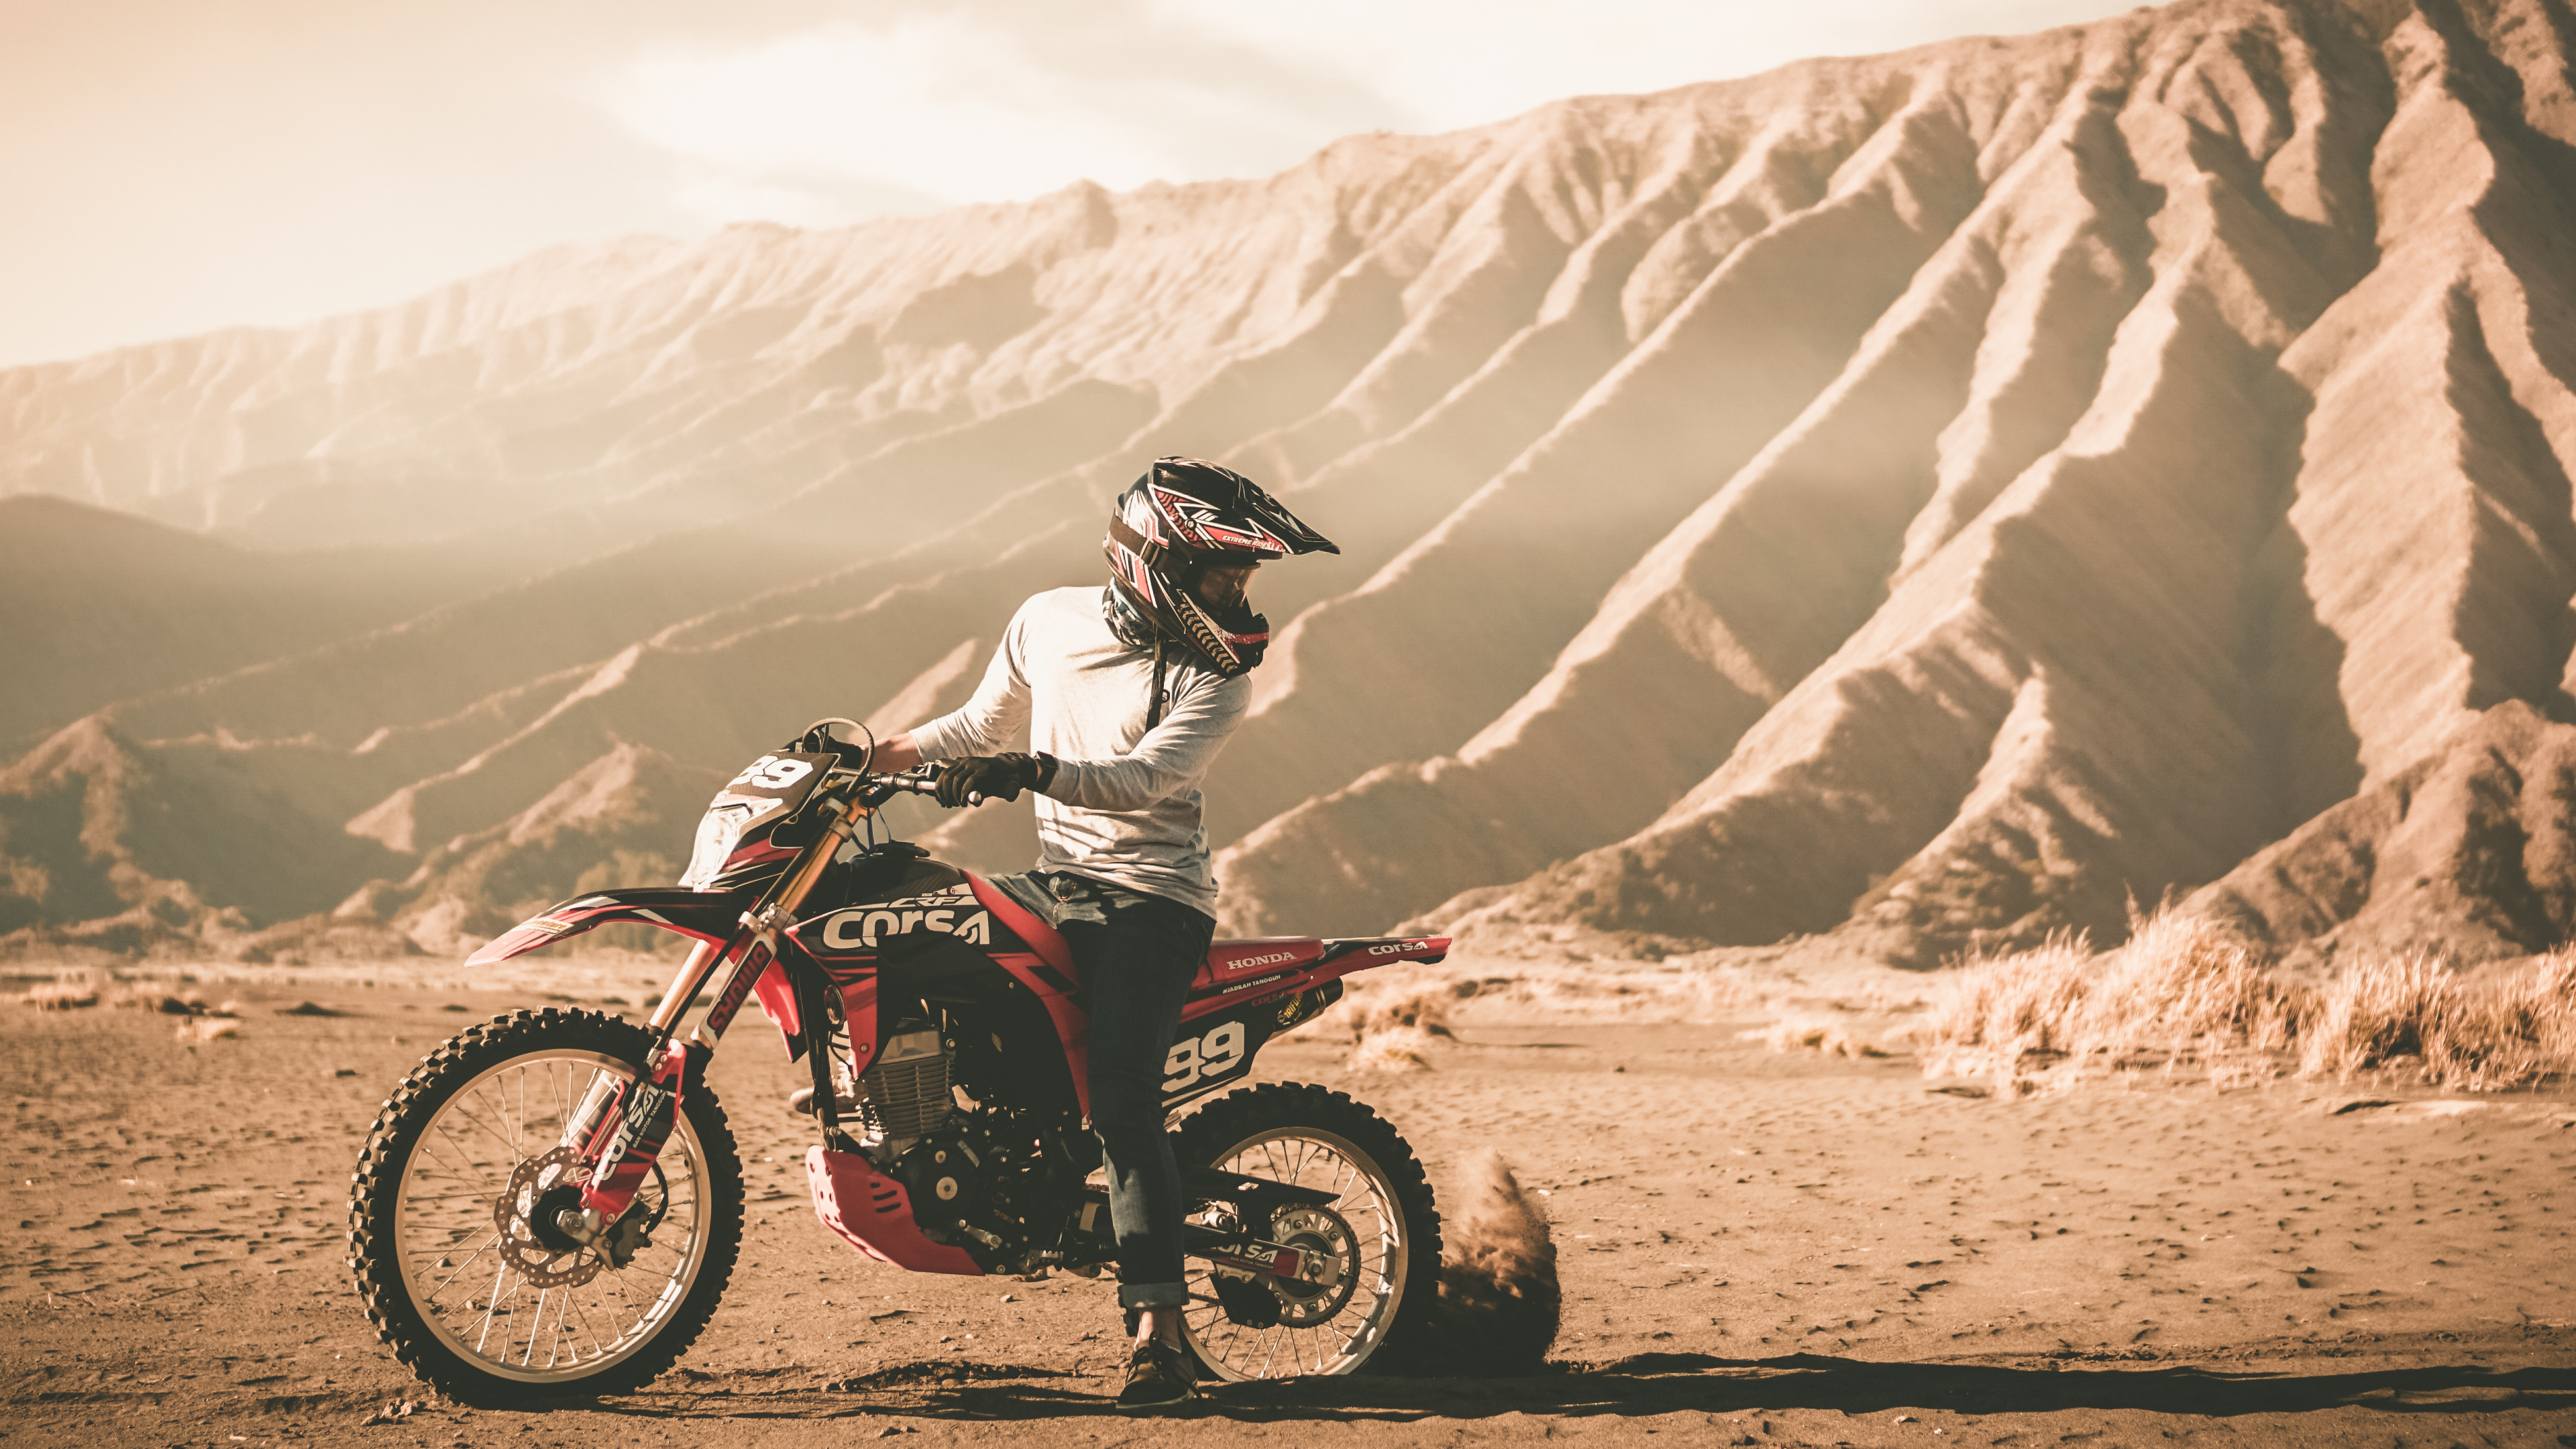 摩托车头盔, 摩托车越野赛, 越野, 耐力, 沙漠赛车 壁纸 3840x2160 允许